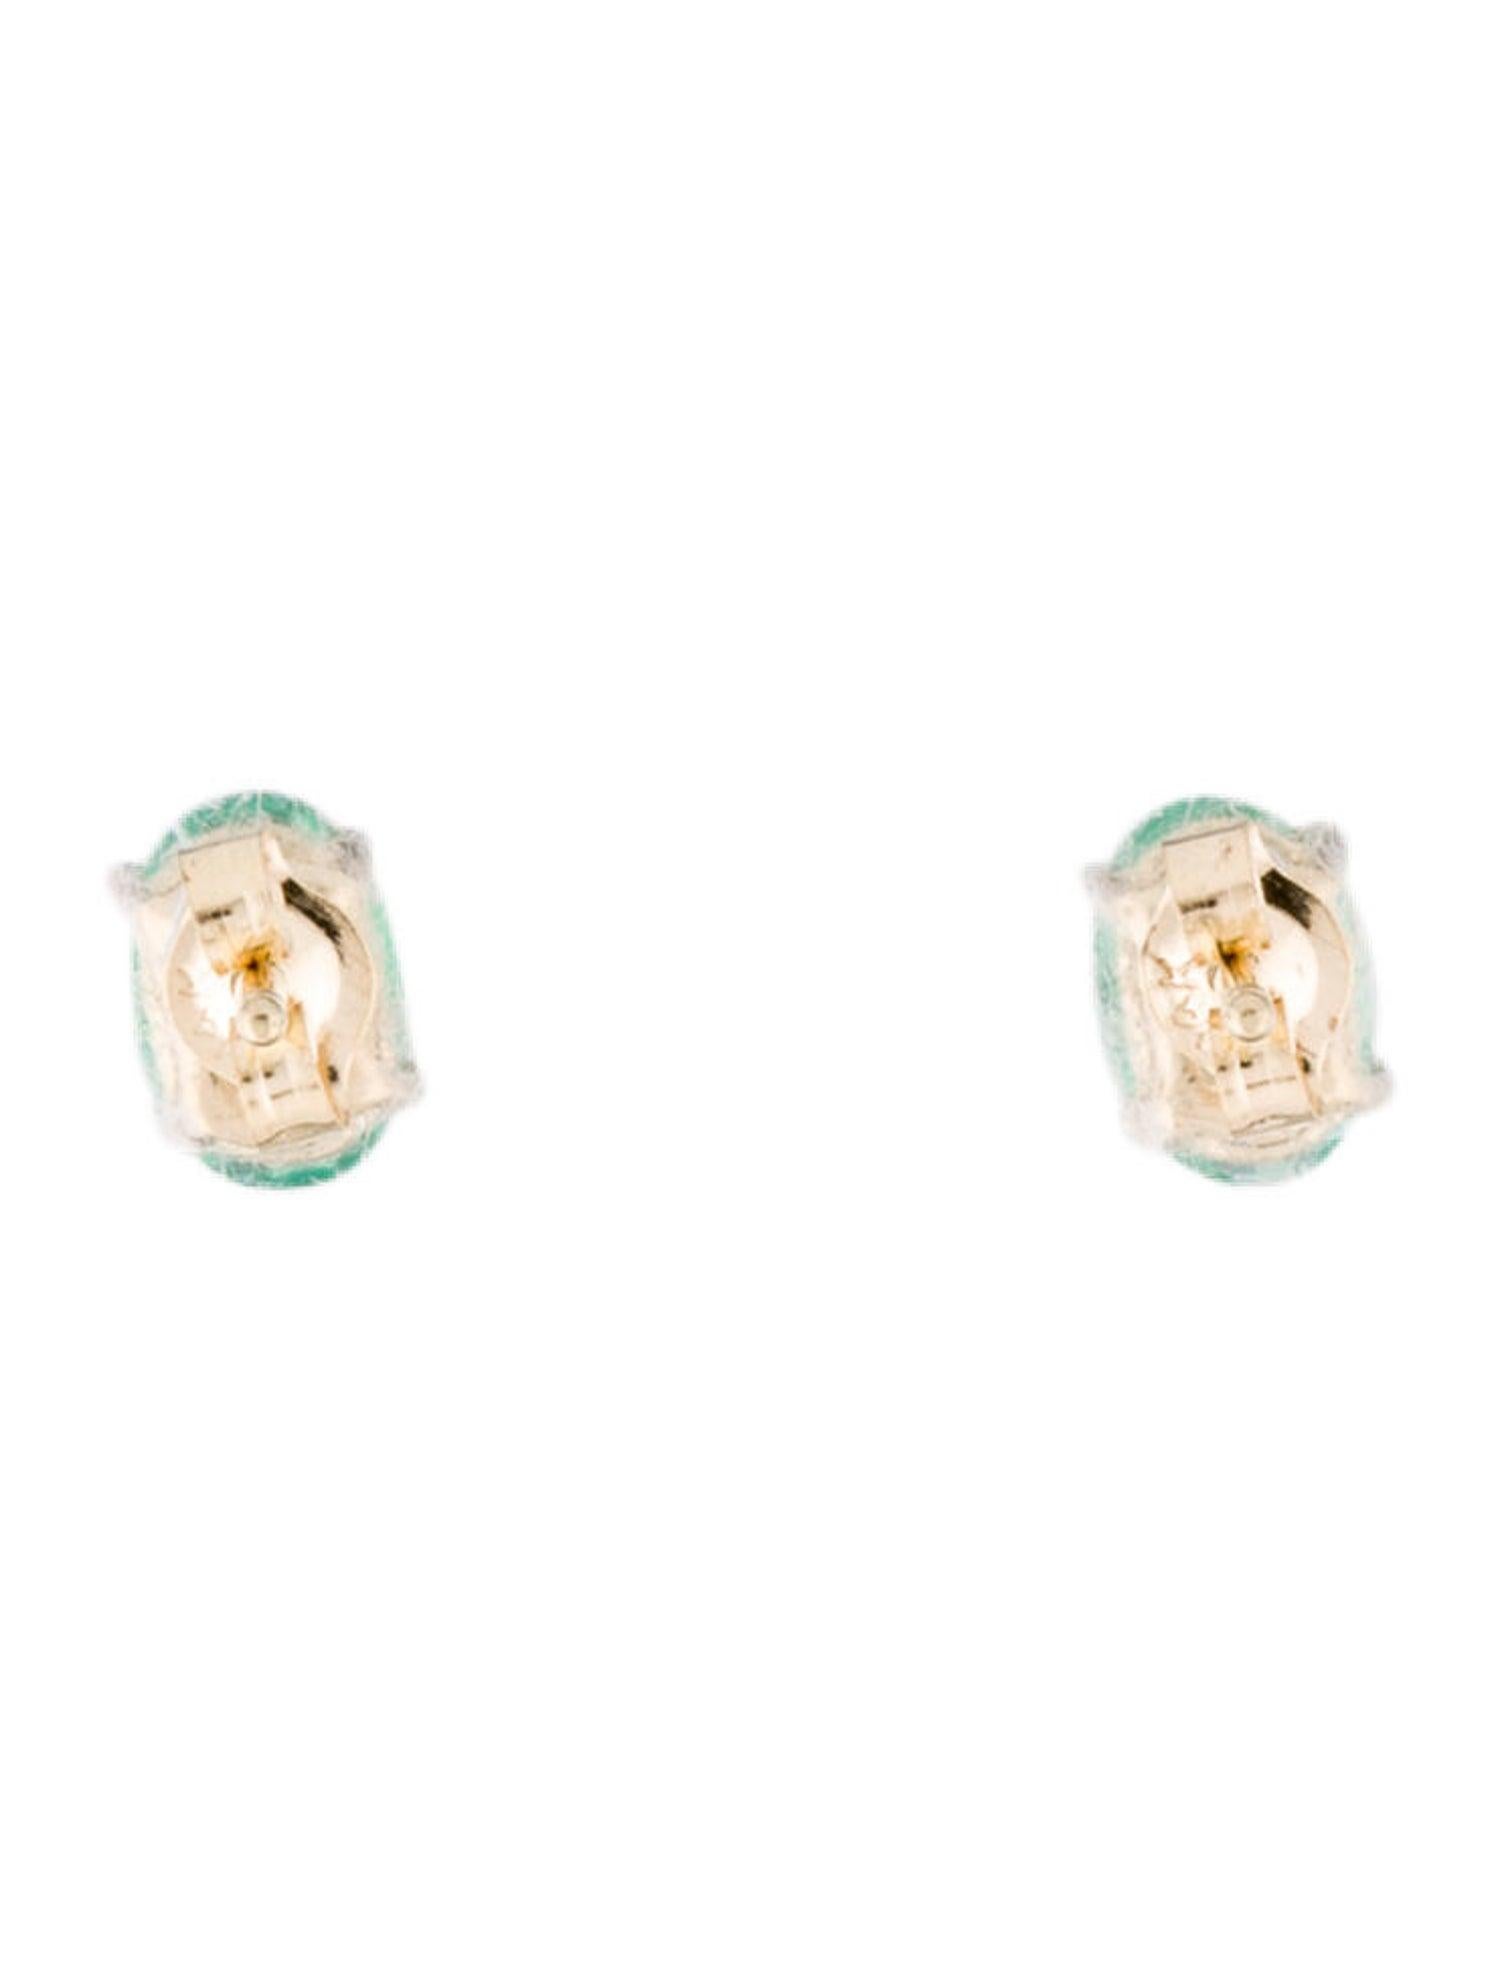 Oval Cut 14 Karat Yellow Gold 0.80 Carat Green Emerald Oval Shape Stud Earrings For Sale